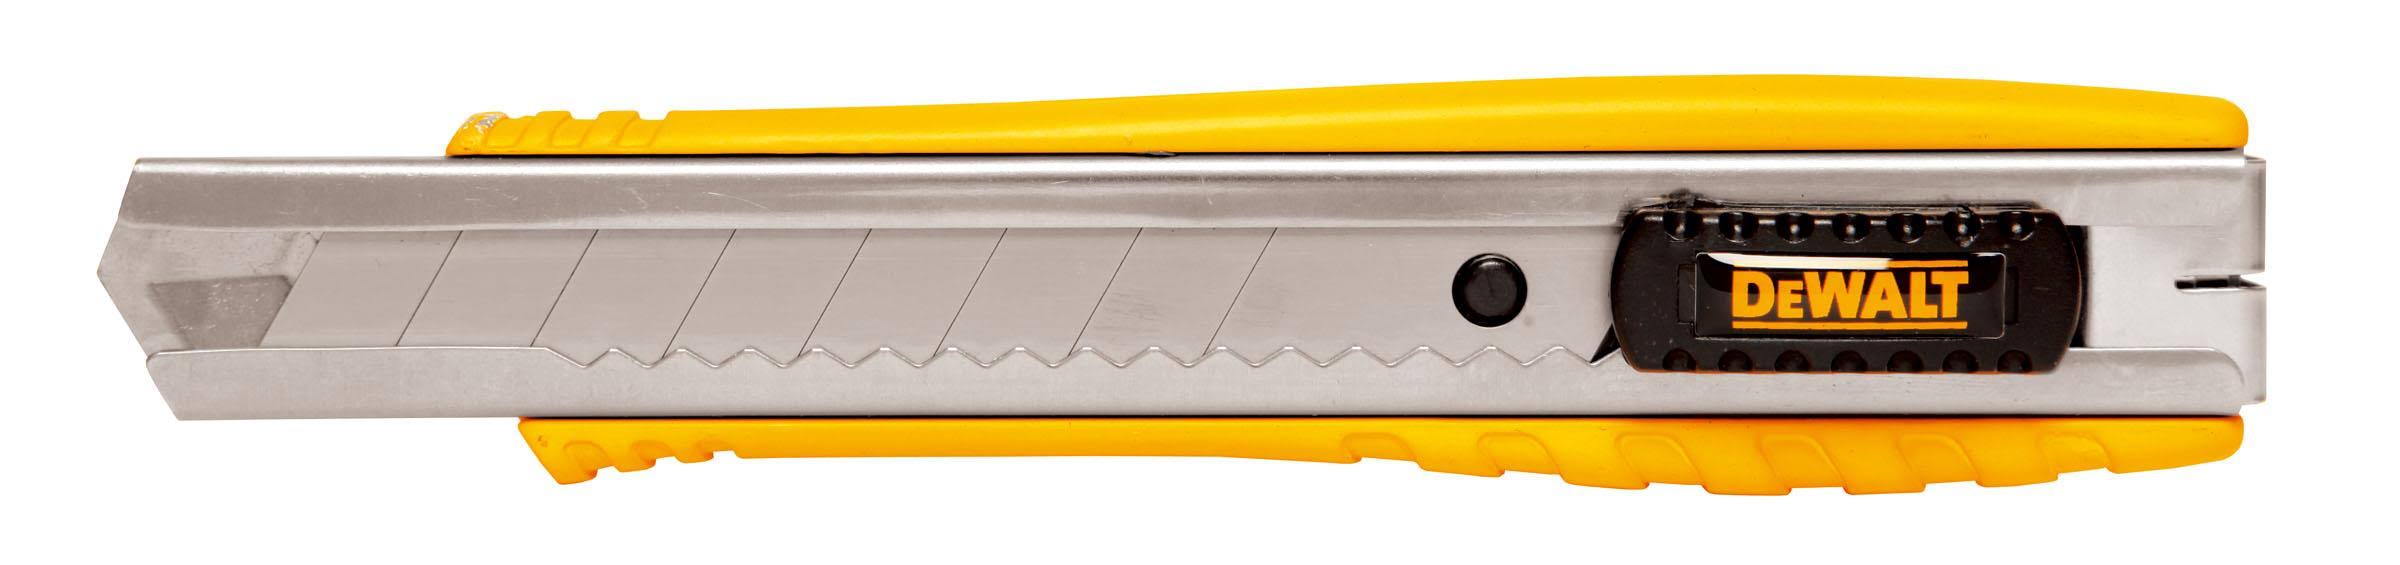 Dewalt Single Blade Snap Off Knife - 18mm